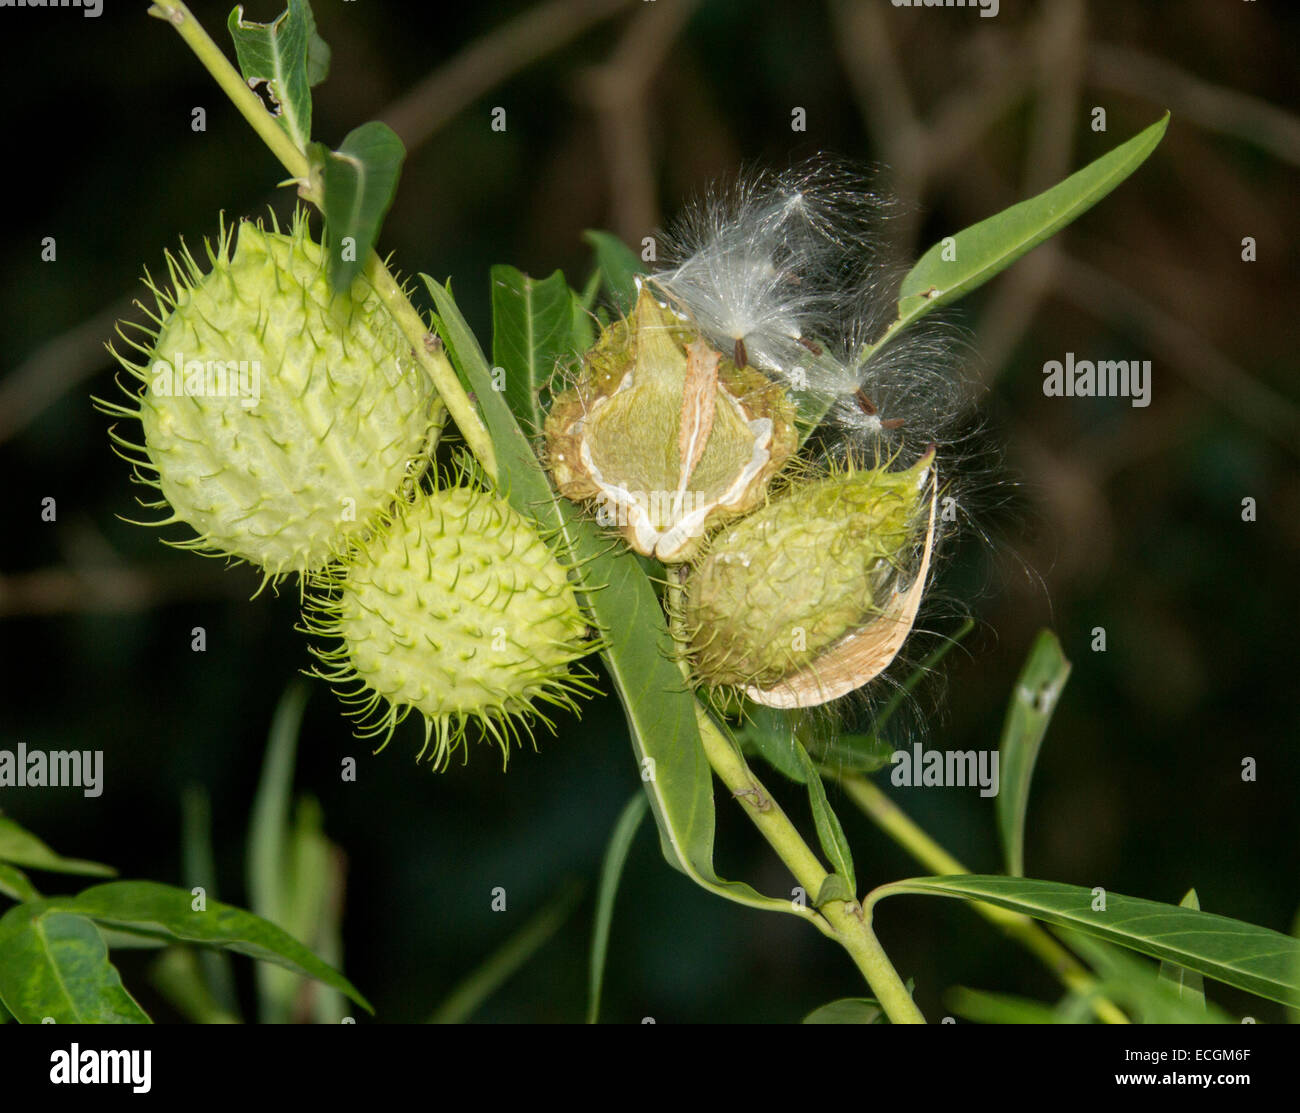 Baccelli di semi di erbaccia Gomphocarpus hysocarpus, il palloncino di cotone con bush spinoso cialde cialde e aperta per esporre i semi, su sfondo scuro Foto Stock